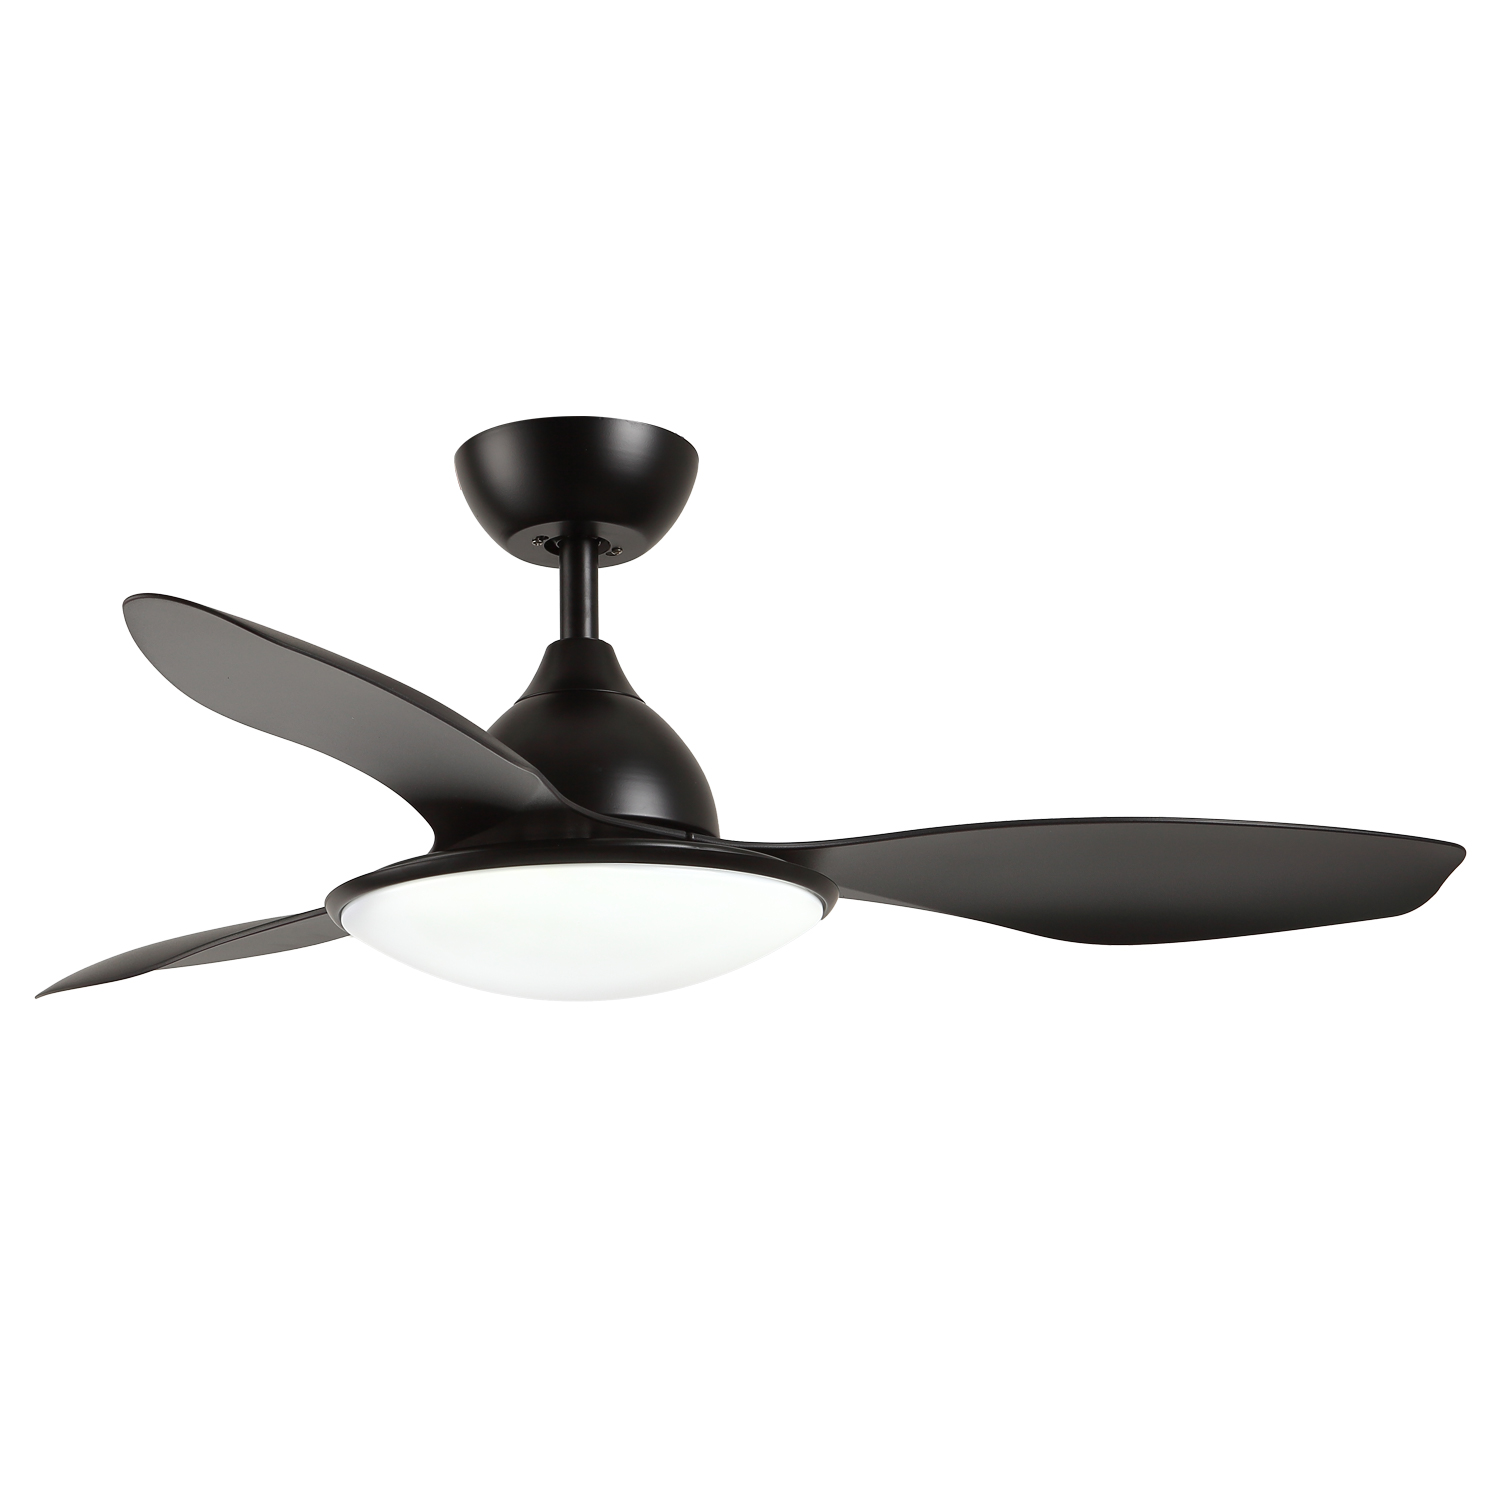 Modern Simple Plastic Light Fan ABS Blades Chandelier Fan Dc Bldc Remote Control Cheap Ceiling Fan with Light